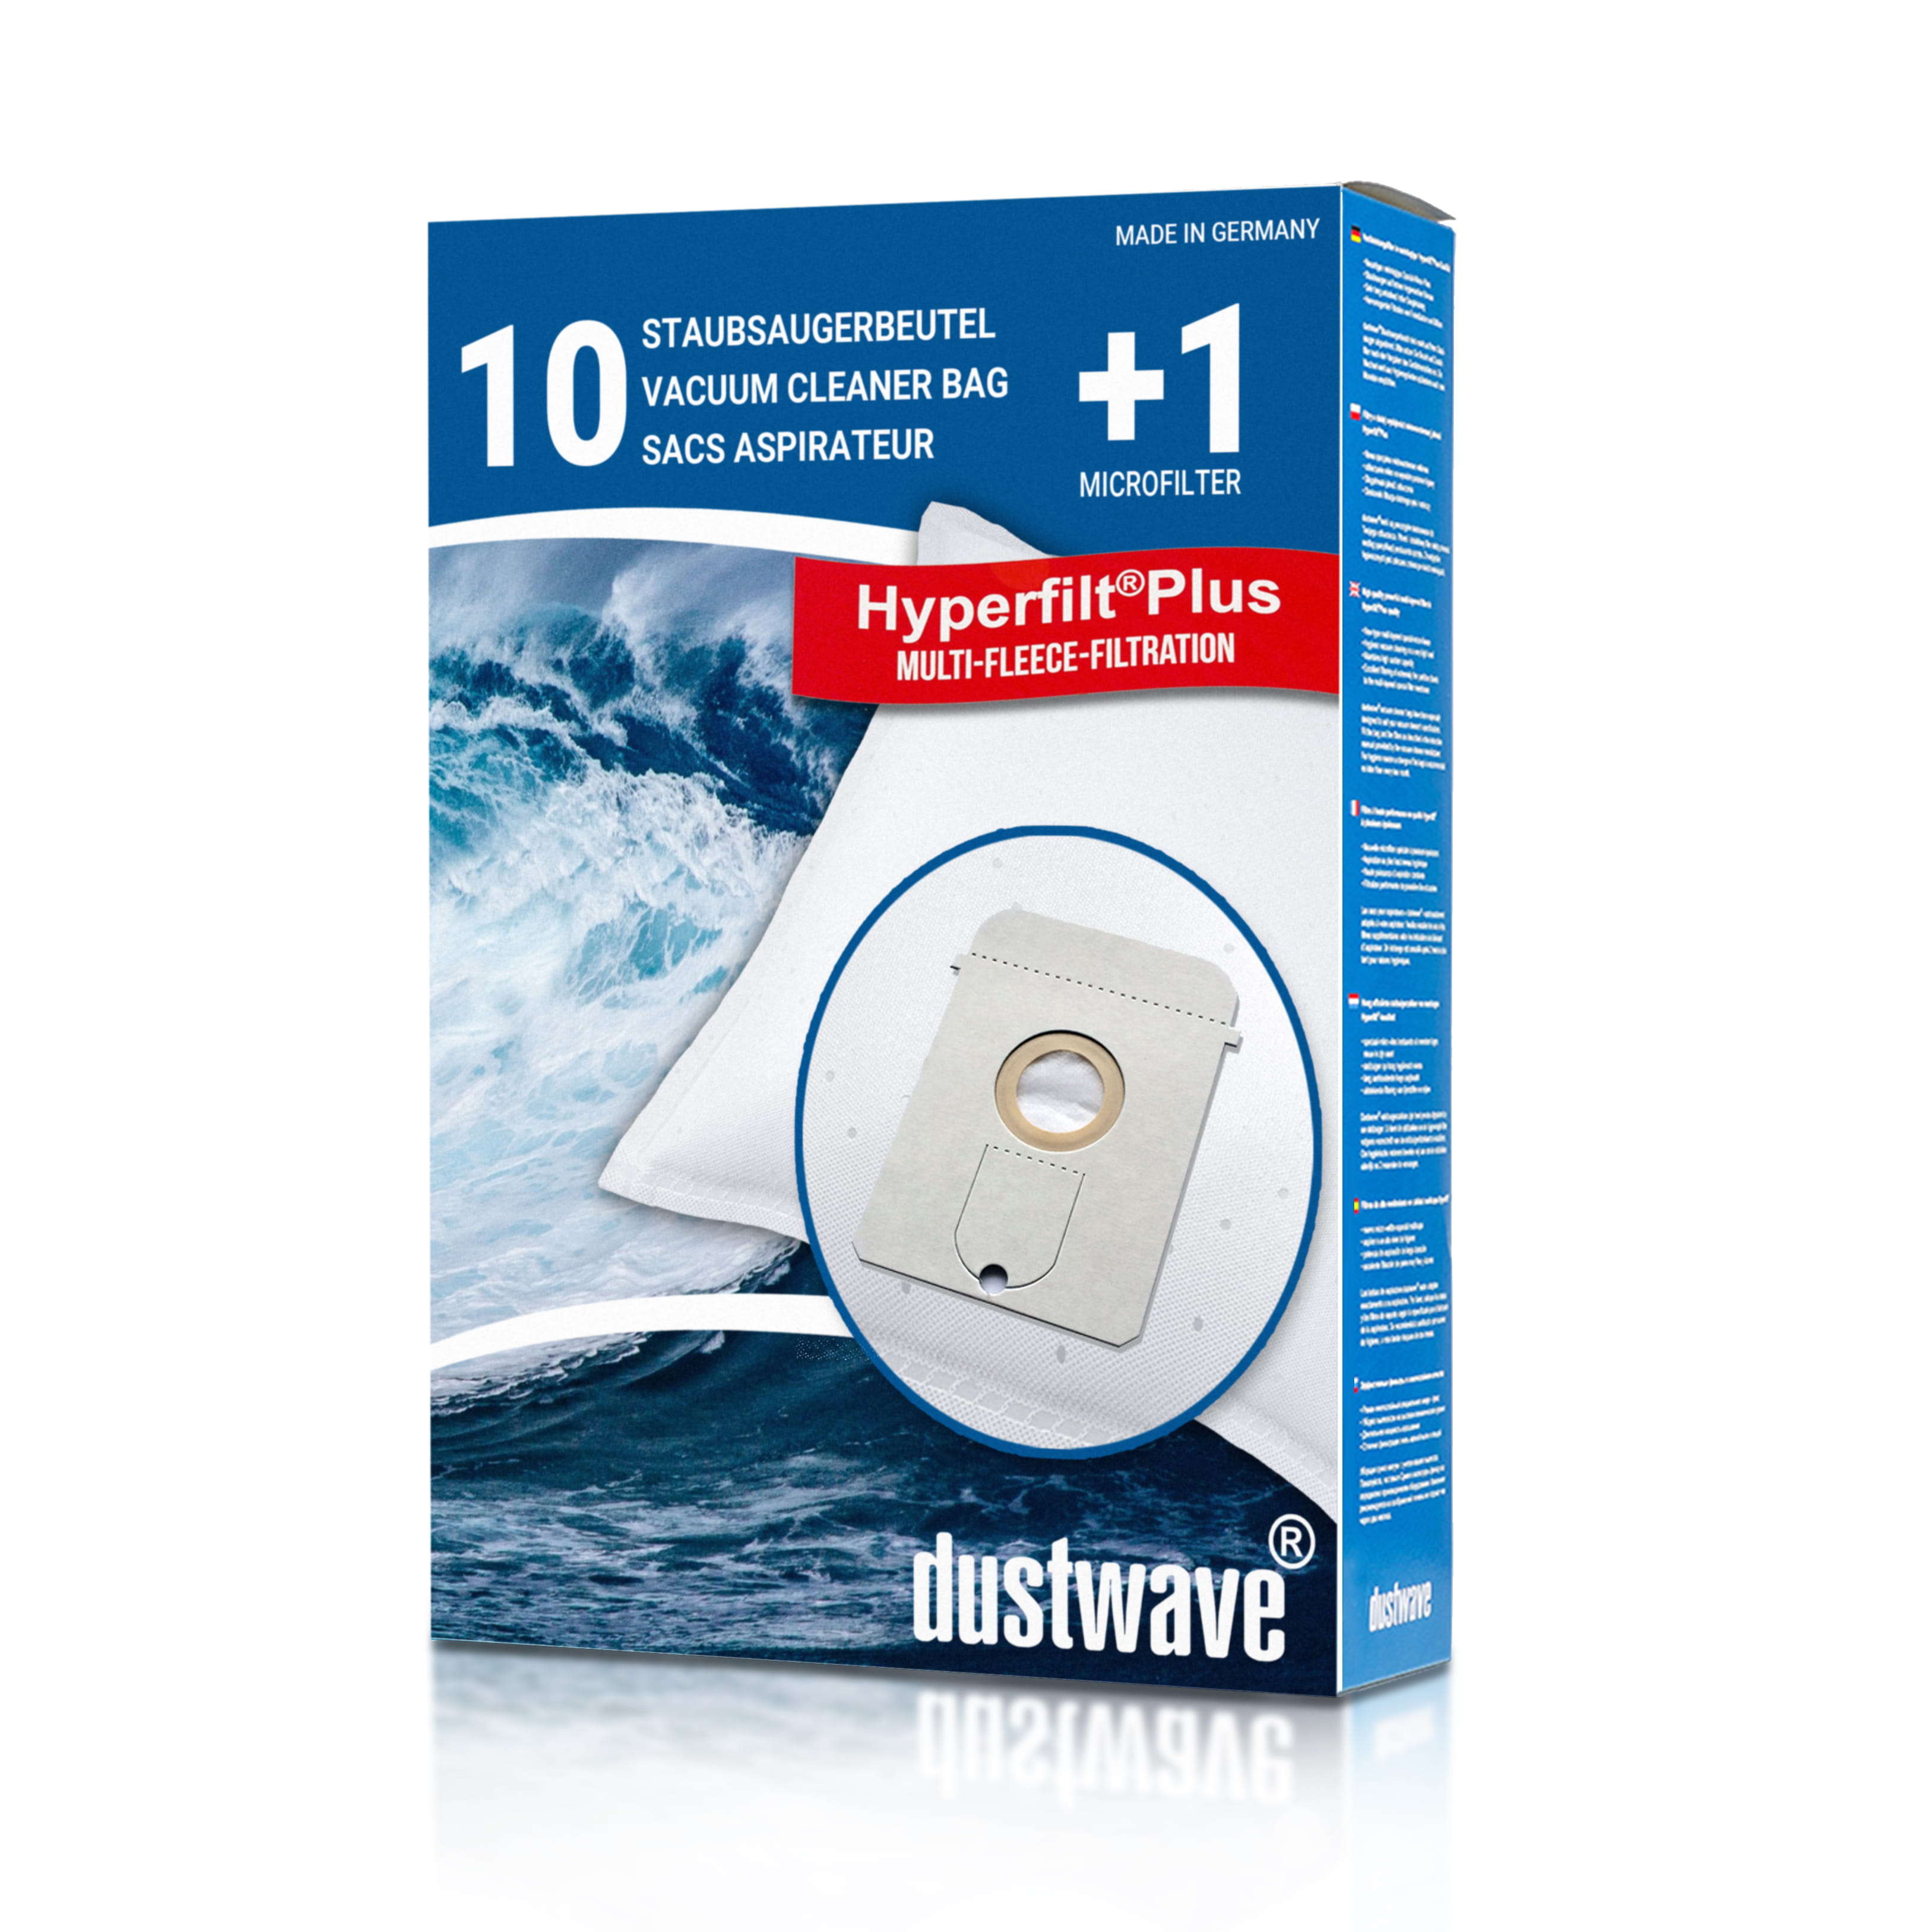 Dustwave® 10 Staubsaugerbeutel für AEG Vampyr 7301 Electronic - hocheffizient, mehrlagiges Mikrovlies mit Hygieneverschluss - Made in Germany